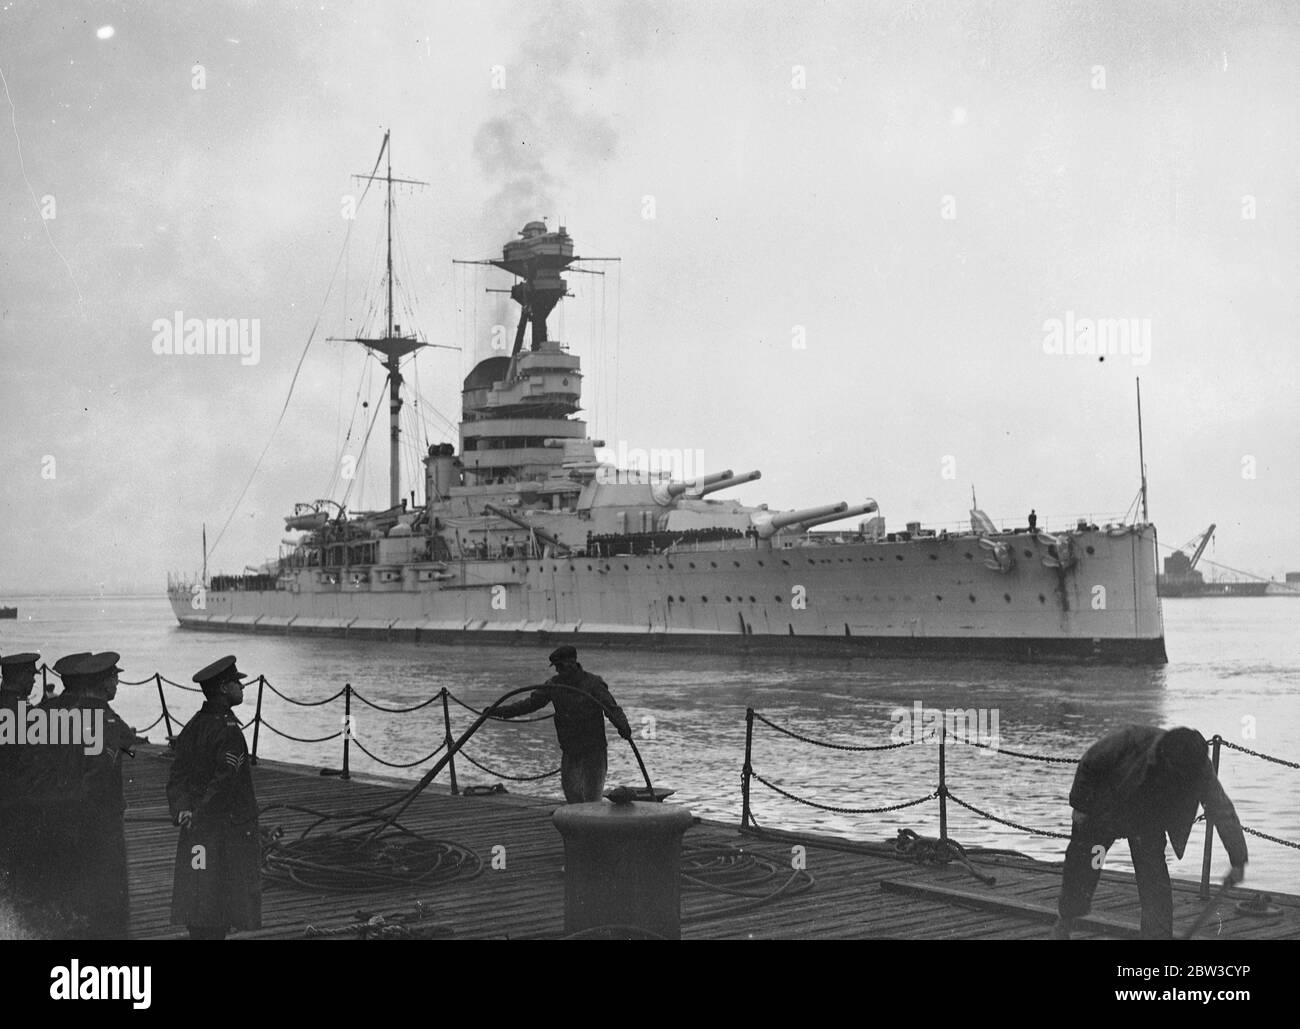 Schlachtschiff Haus aus dem mittelmeer . Segler verbringen weihnachten in England. Die 29 , 150 Tonnen Schlachtschiff HMS Resolution (Wimpel Nummer 09) kam in Porstmouth von Alexandria nach mehr als zwei Jahren Dienst auf dem Mittelmeer-Station abgeschlossen. Viele Matrosen anderer Kriegsschiffe waren an Bord, ebenso ihre eigene Besatzung, damit sie weihnachten zu Hause verbringen konnten. Die HMS Resolution bees wurden erleichtert durch HMS Ramilies ( 07 ), die von ähnlicher Klasse und Tonnage ist . Foto zeigt, HMS Auflösung Ankunft in Portsmouth. November 1935 Stockfoto